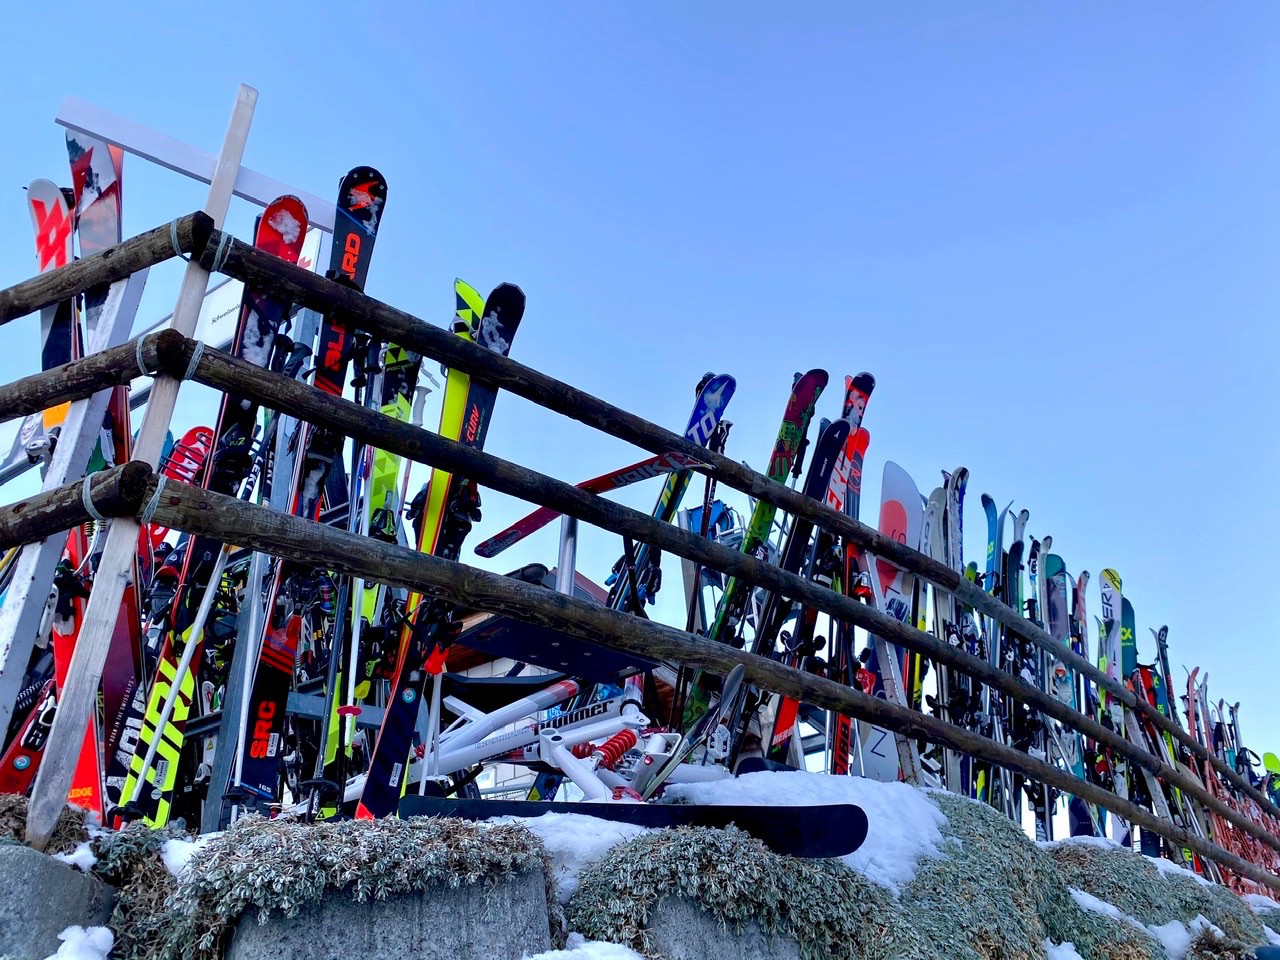 Les gens du village laissent leurs skis devant le télésiège toute la nuit !!! #laconfiance